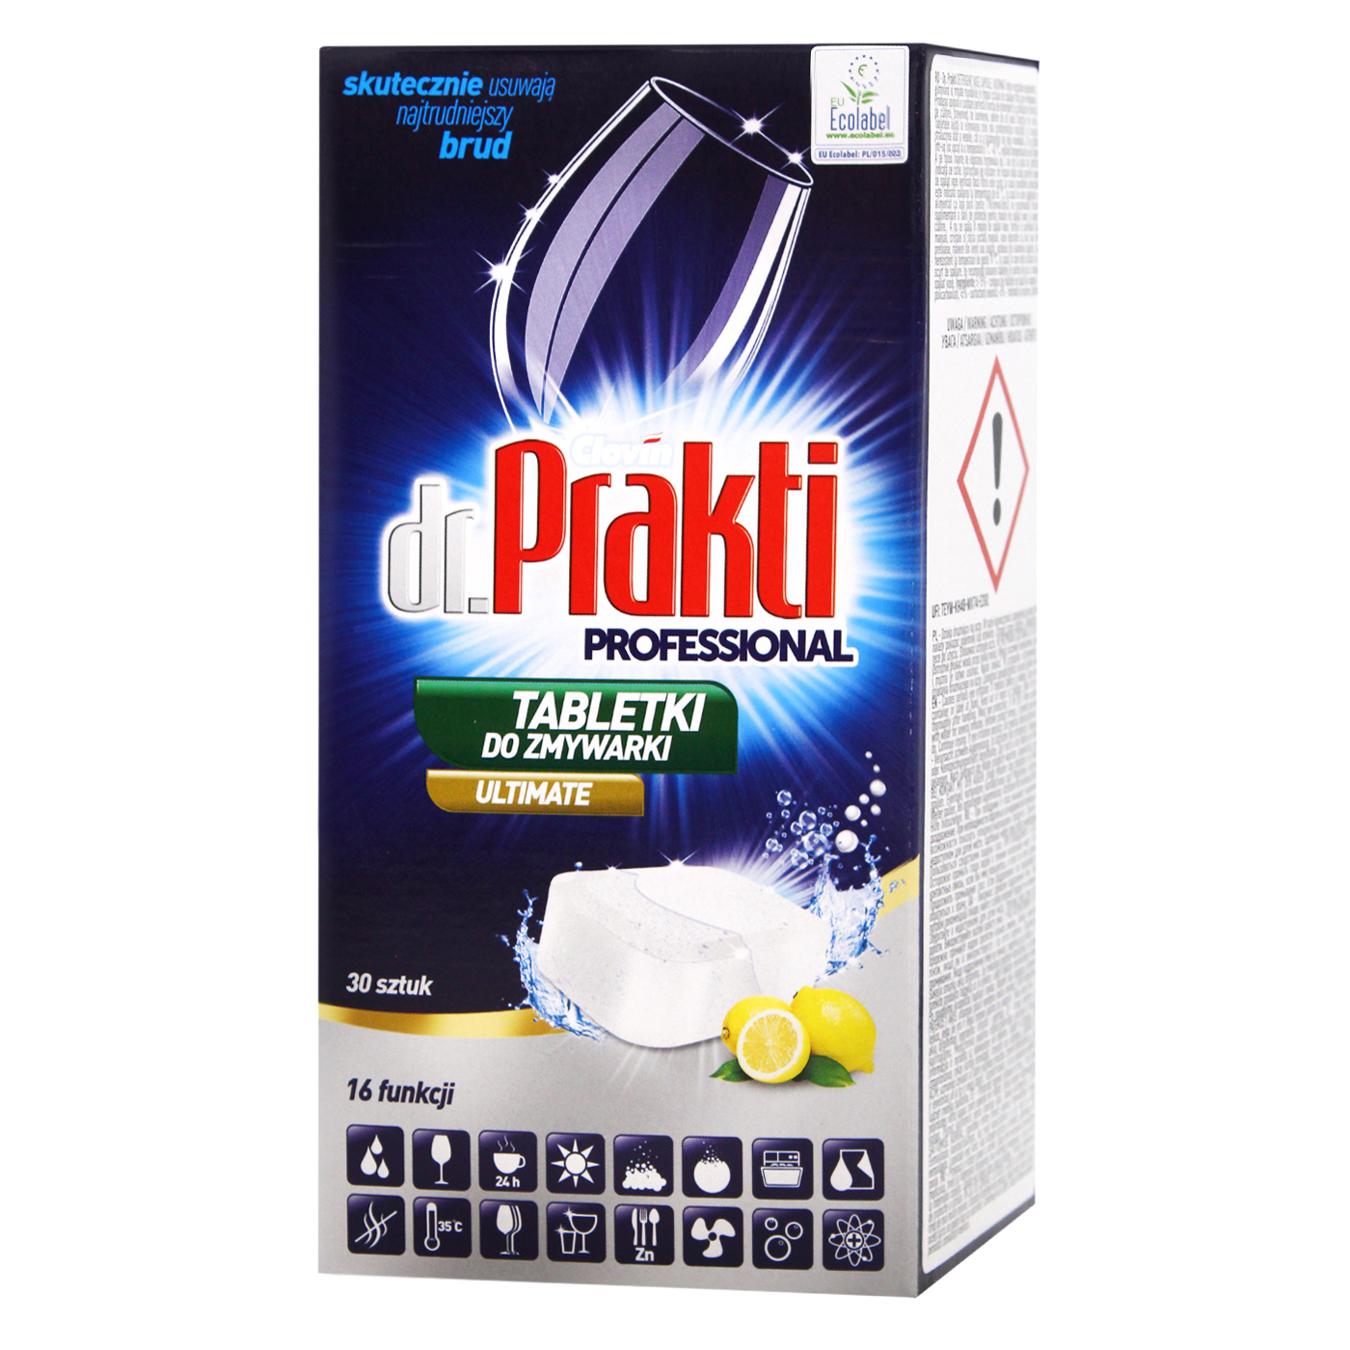 Dr. Prakti tablets for dishwashers 30 pcs